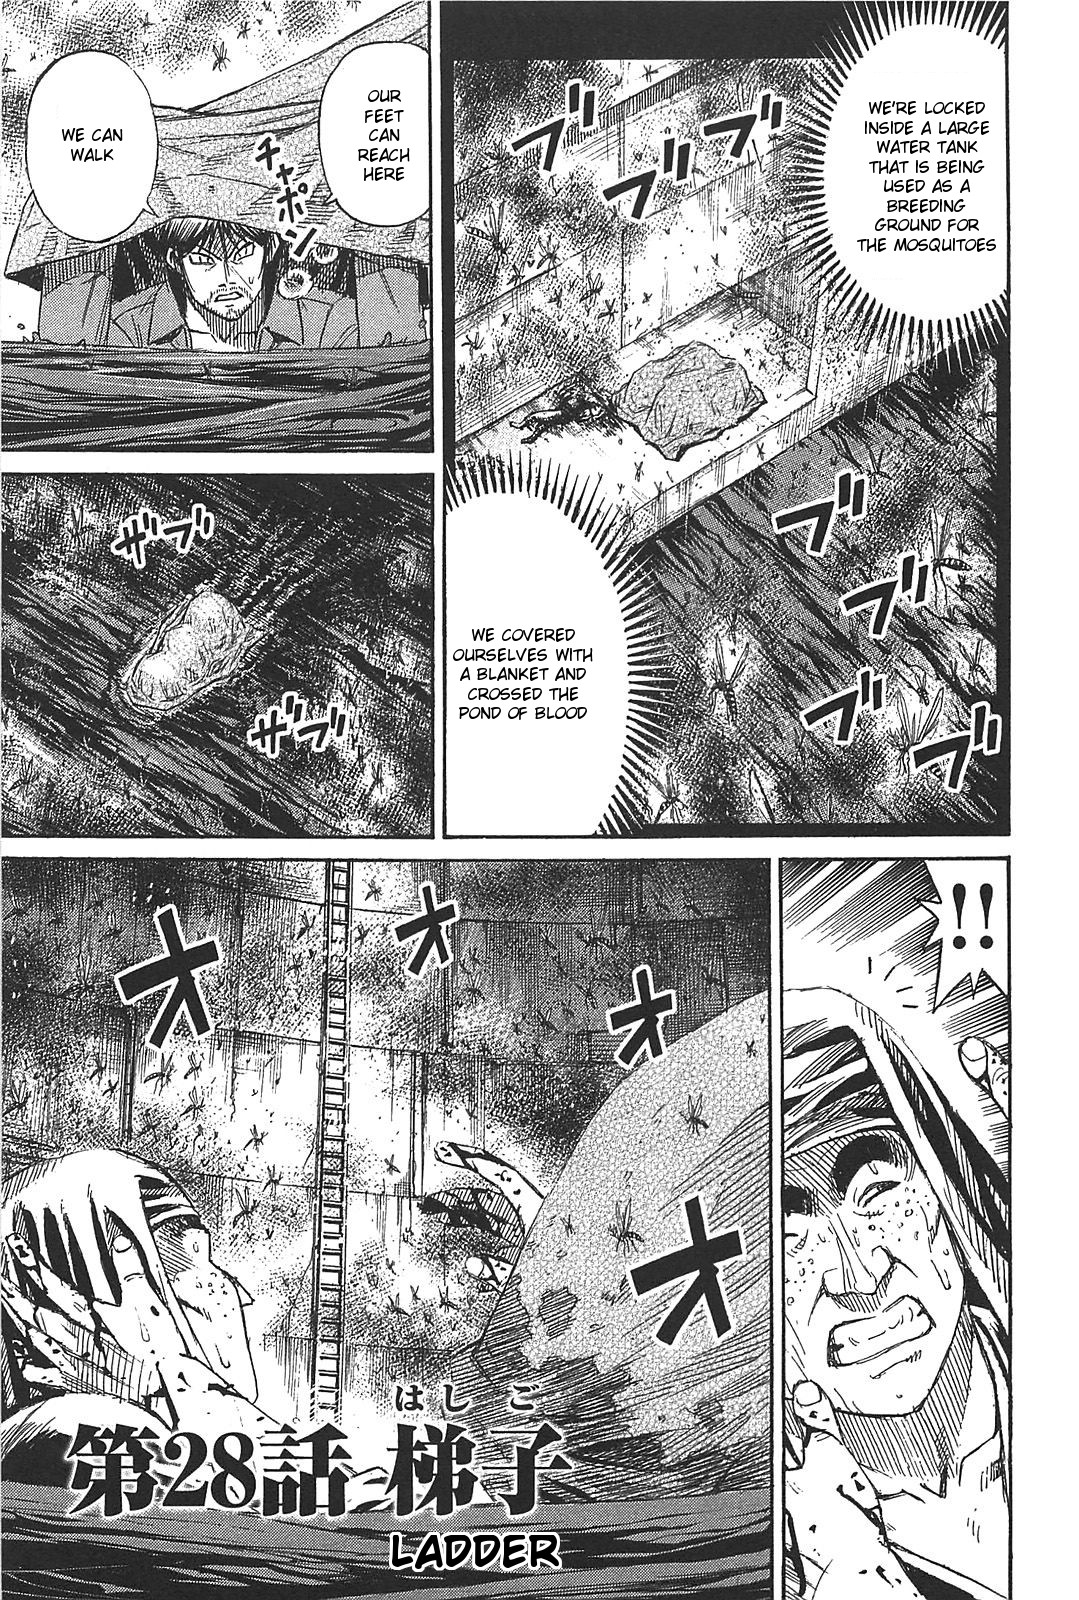 Higanjima Saigo no 47 Hiai Vol. 3 Ch. 28 Ladder